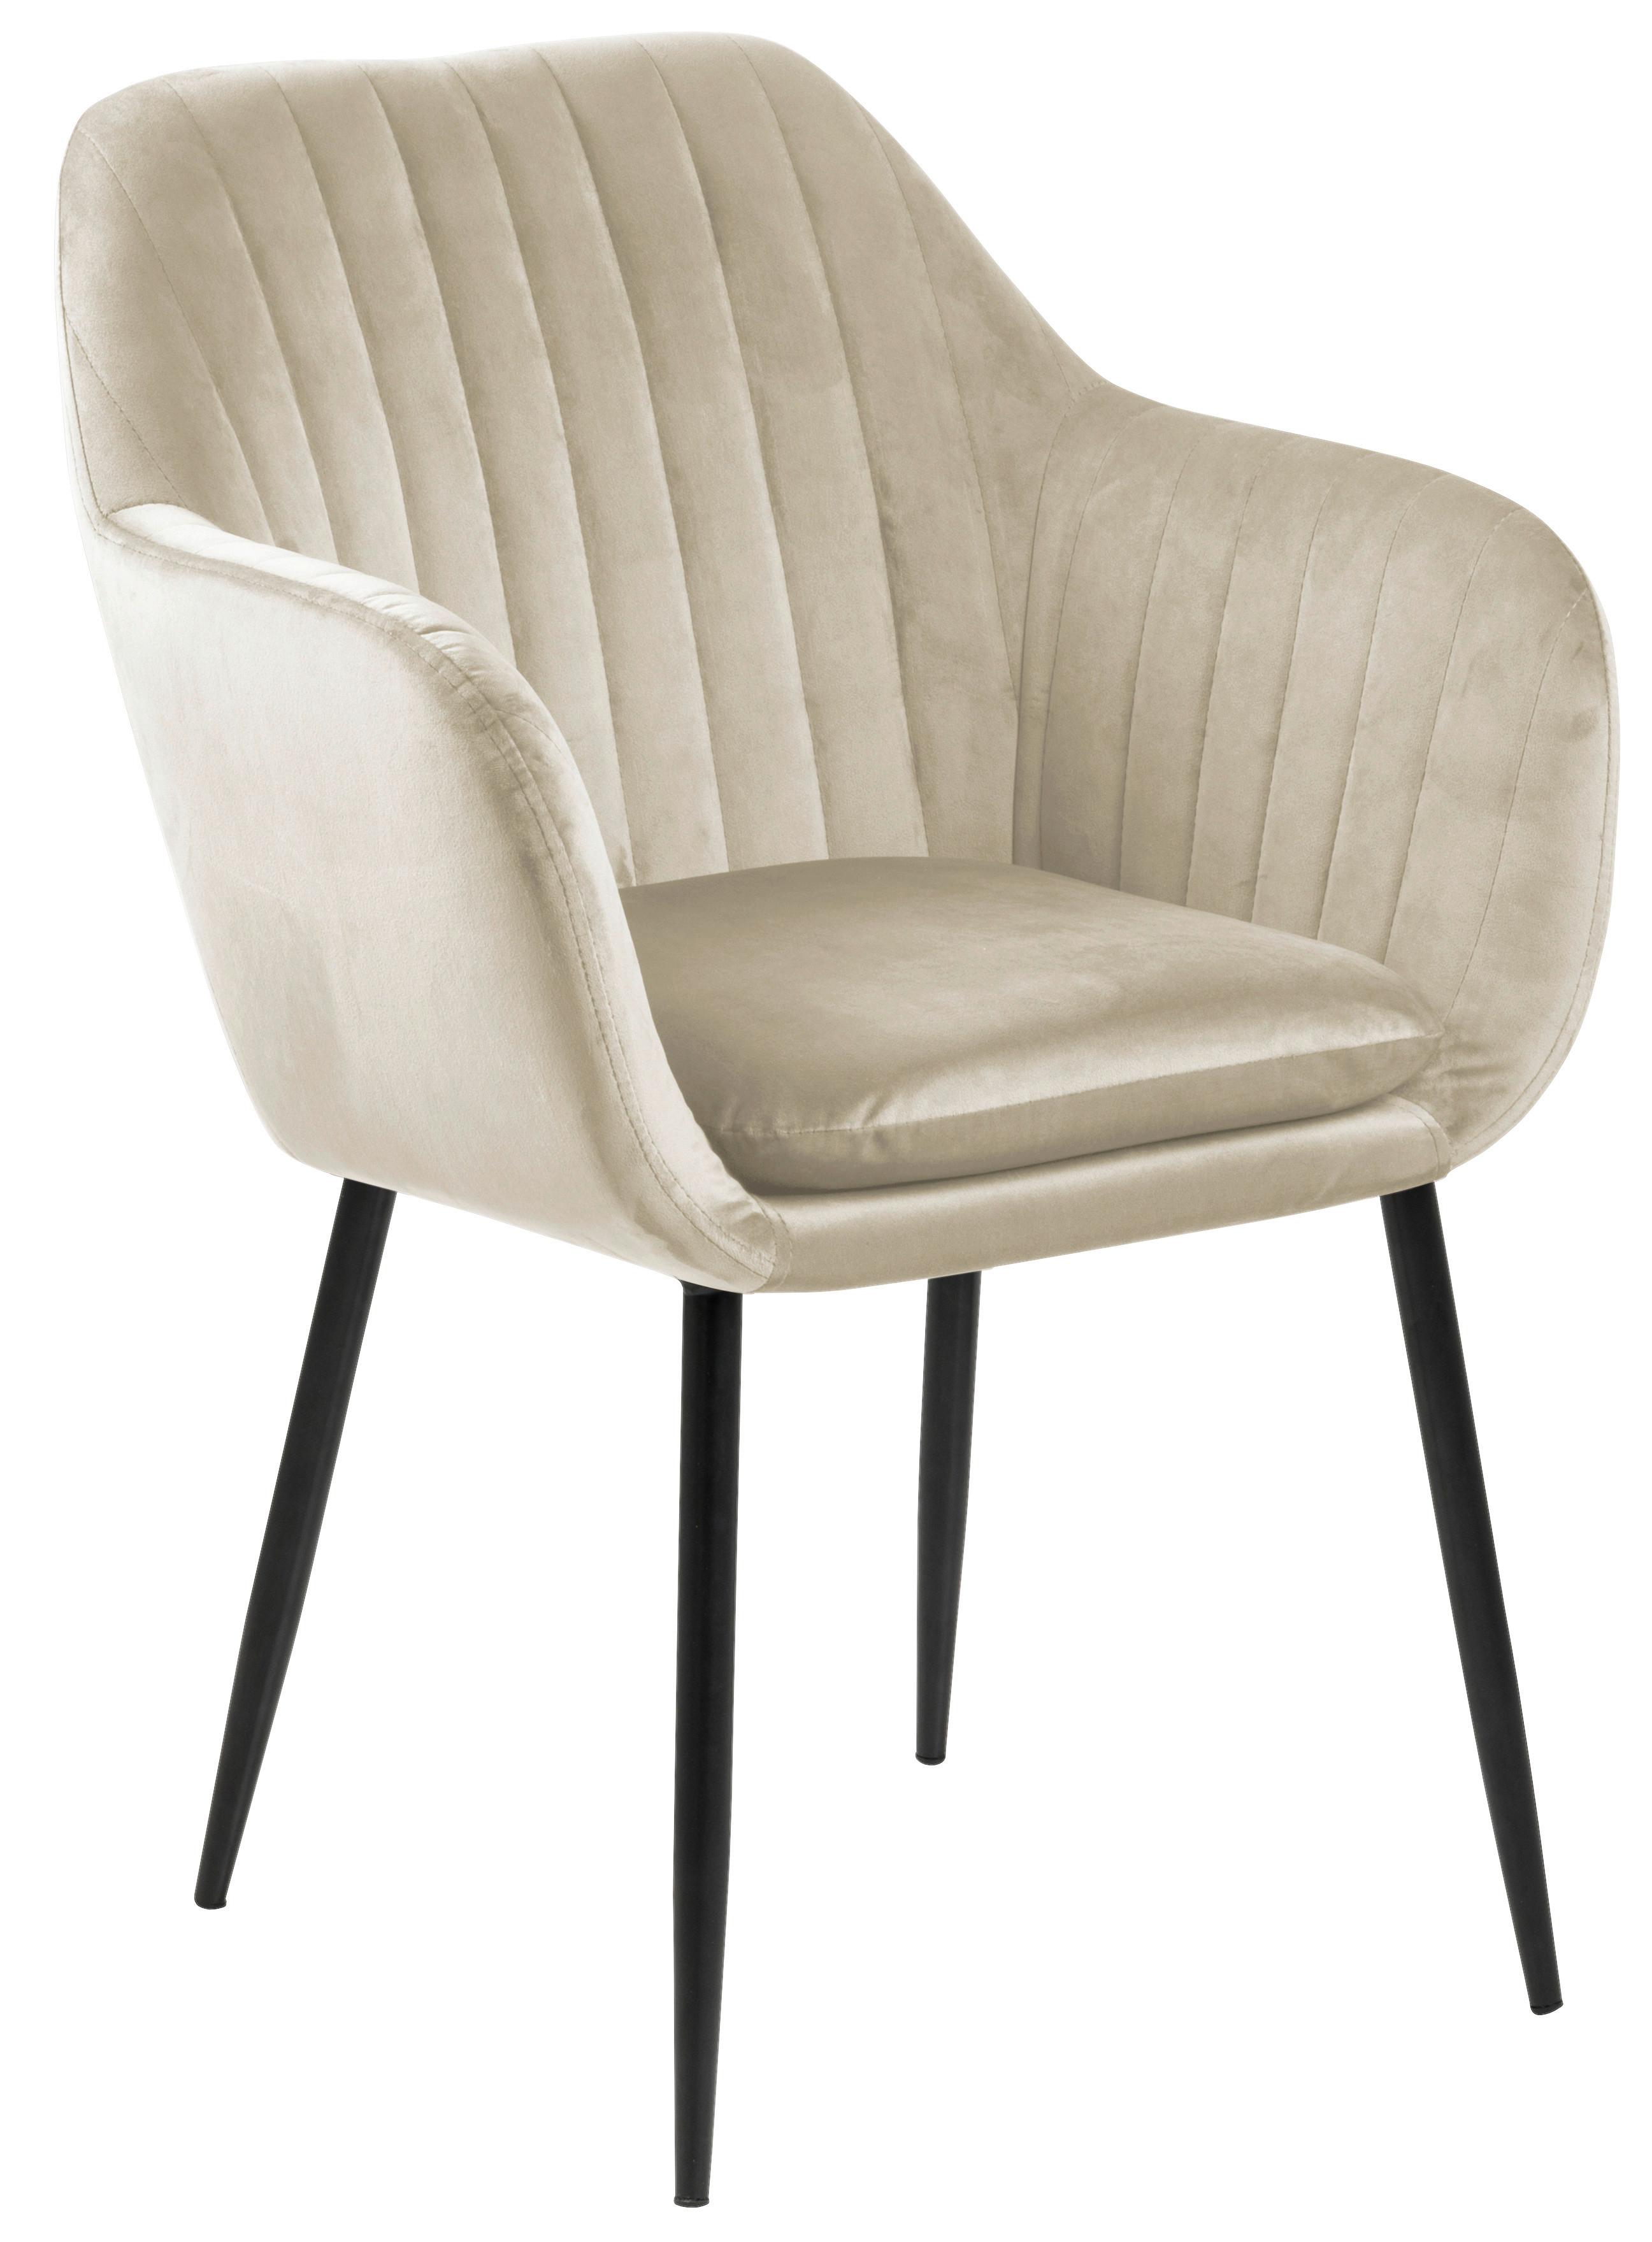 Židle S Podoučkmai Emilia Béžová - černá/pískové barvy, Trend, kov/textil (57/83/61cm) - MID.YOU